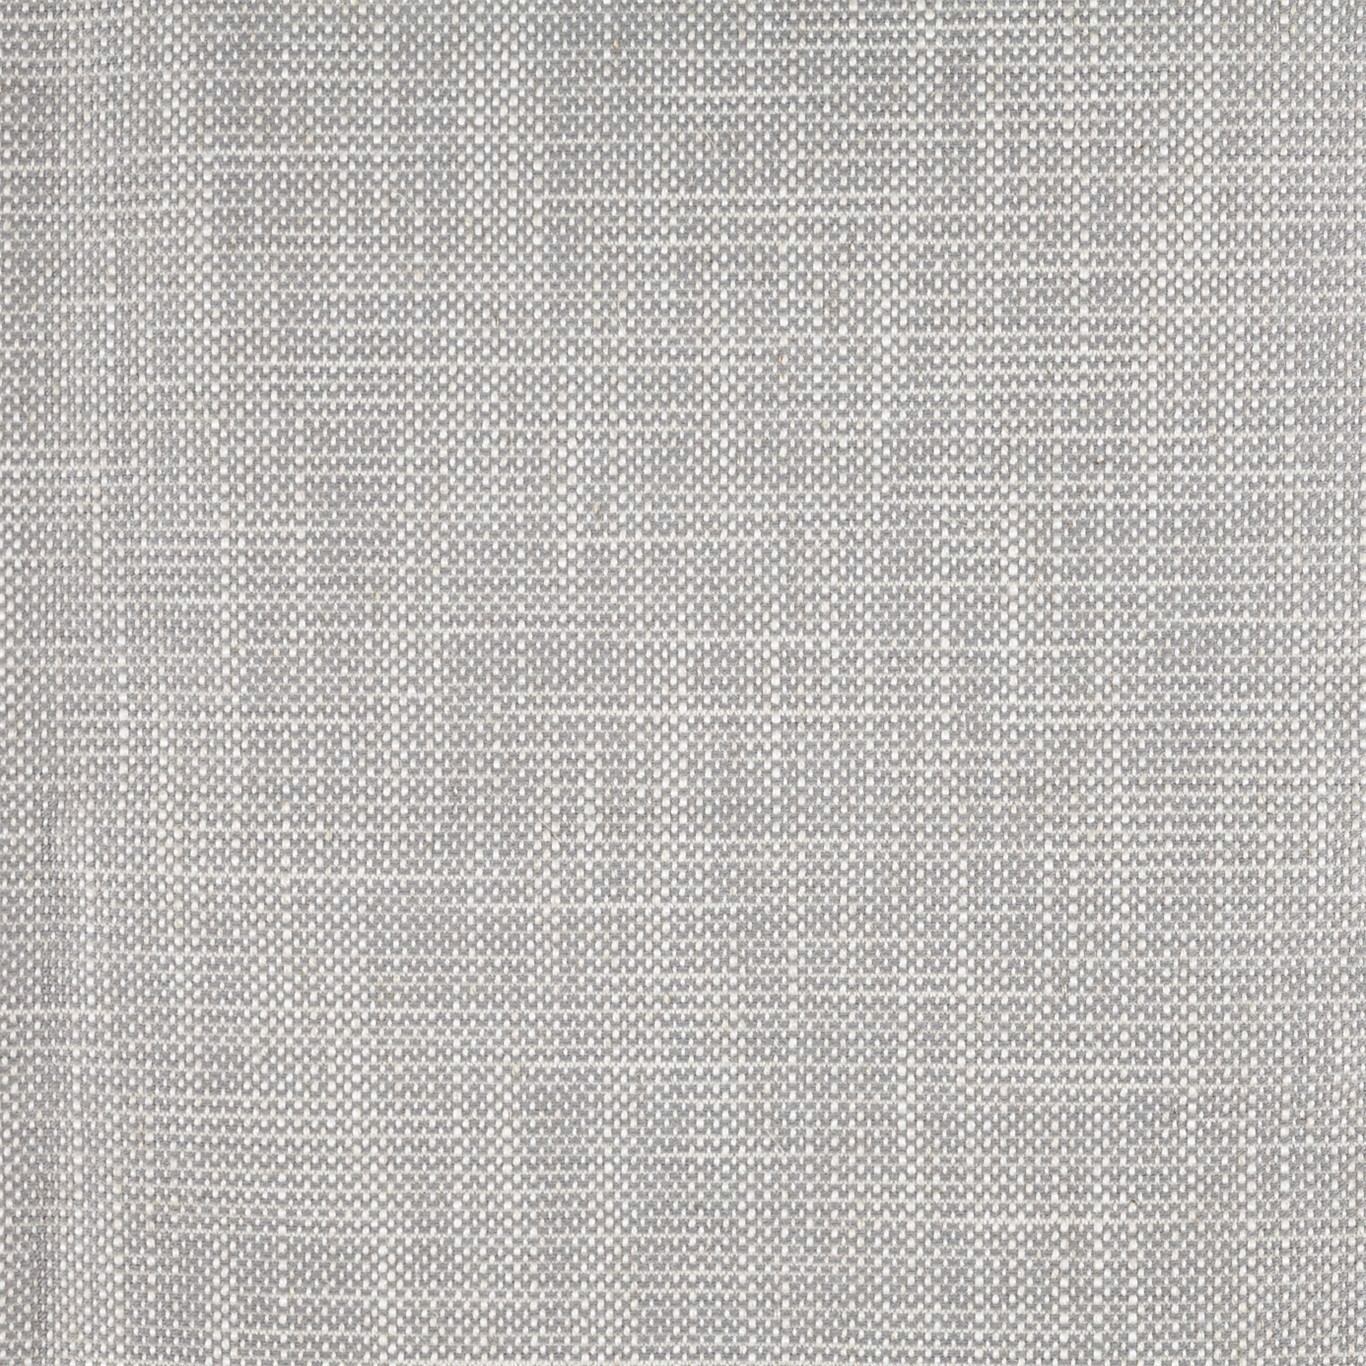 Lowen Silver Fabric by SAN